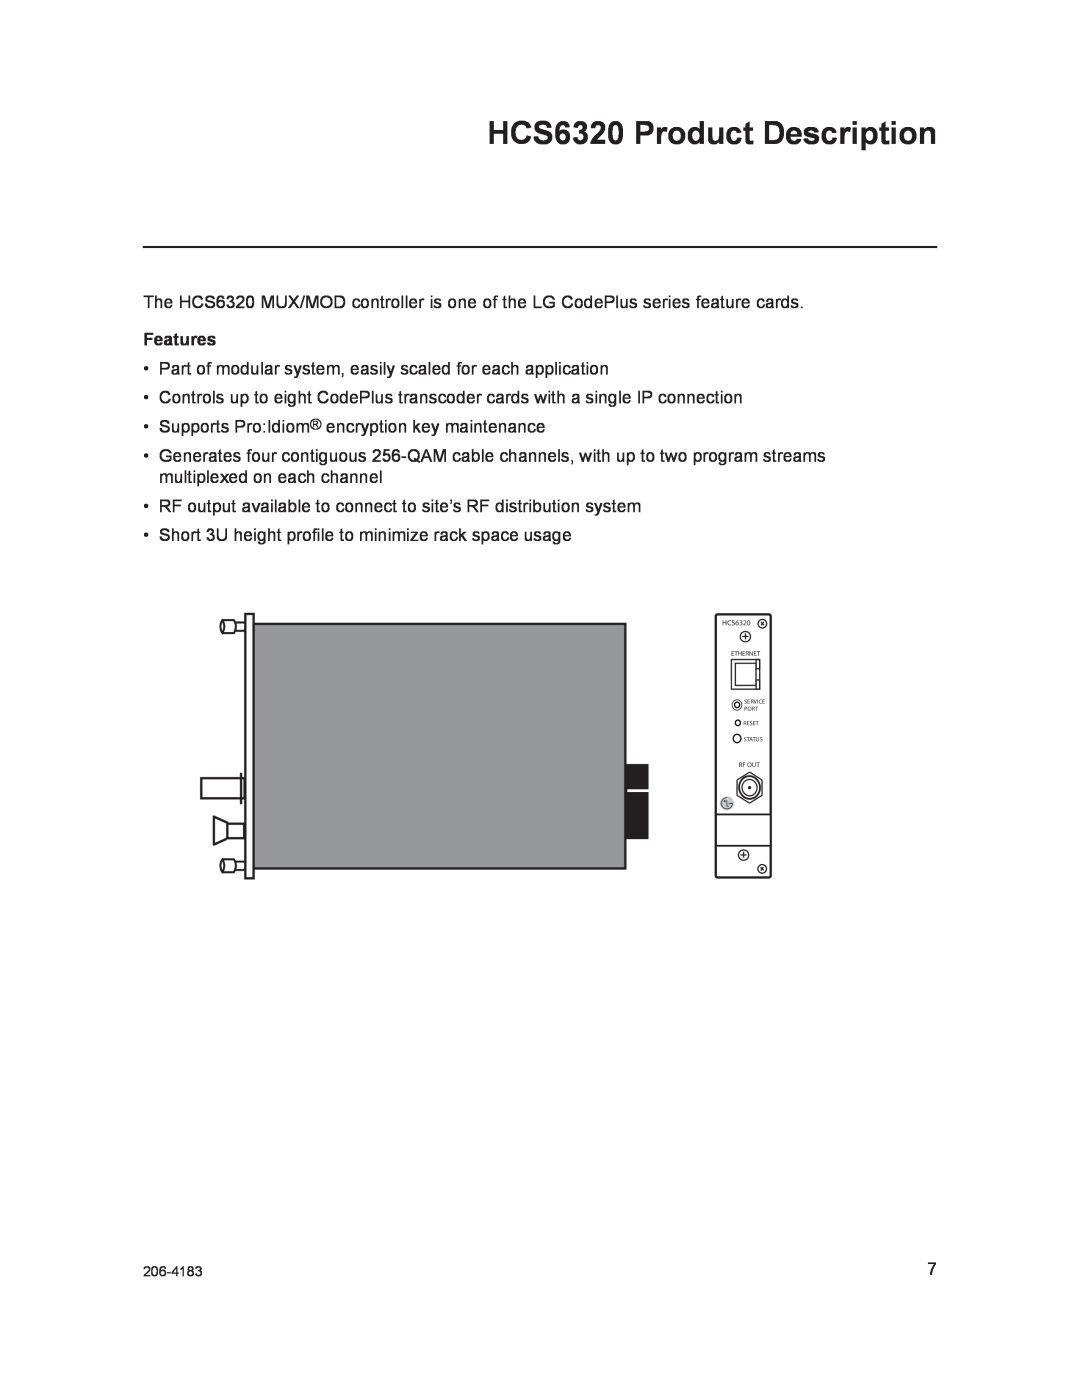 LG Electronics setup guide HCS6320 Product Description, Features 